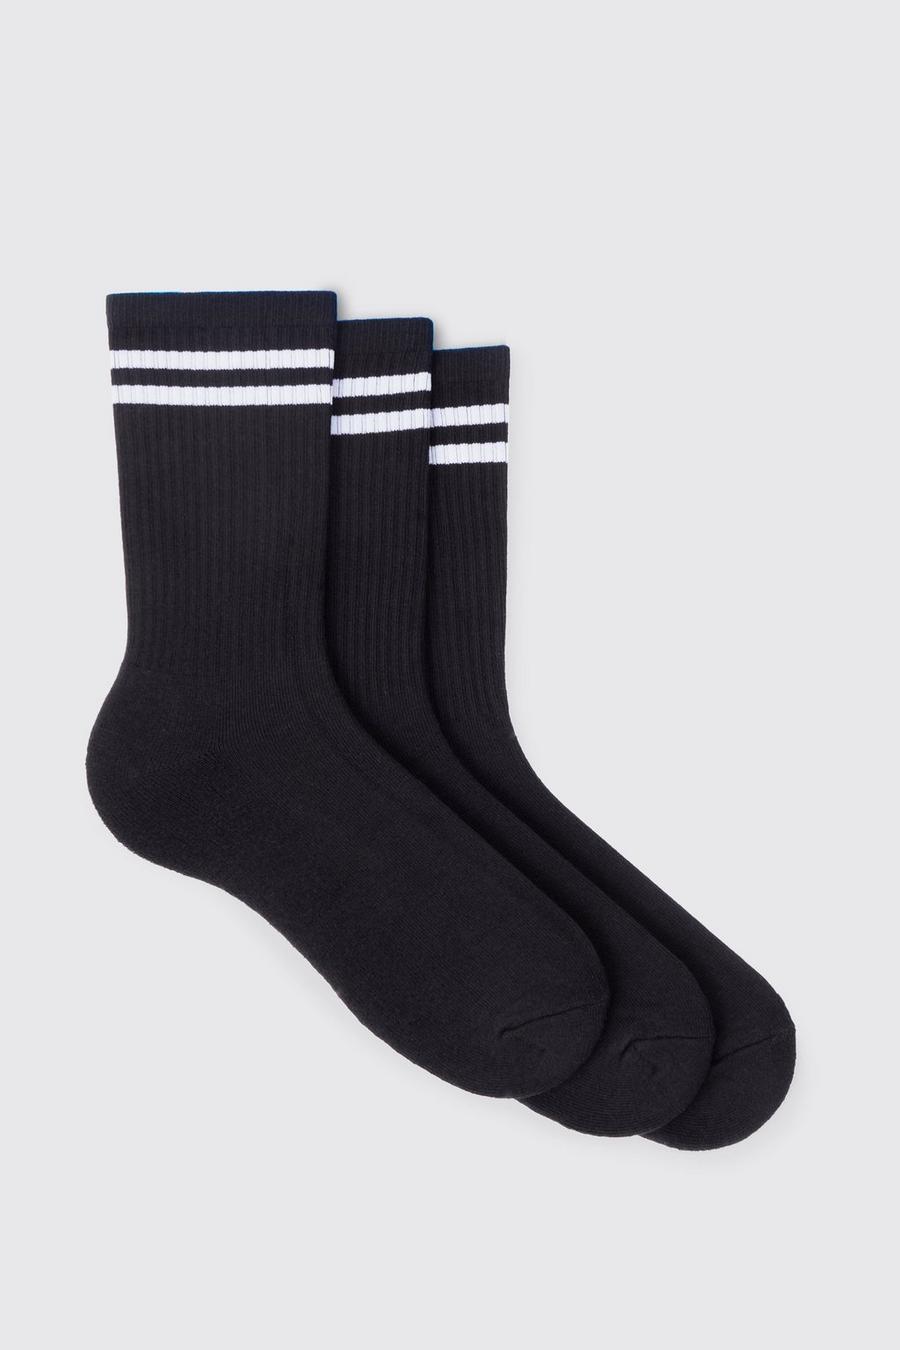 Pack de 3 pares de calcetines deportivos con rayas, Black